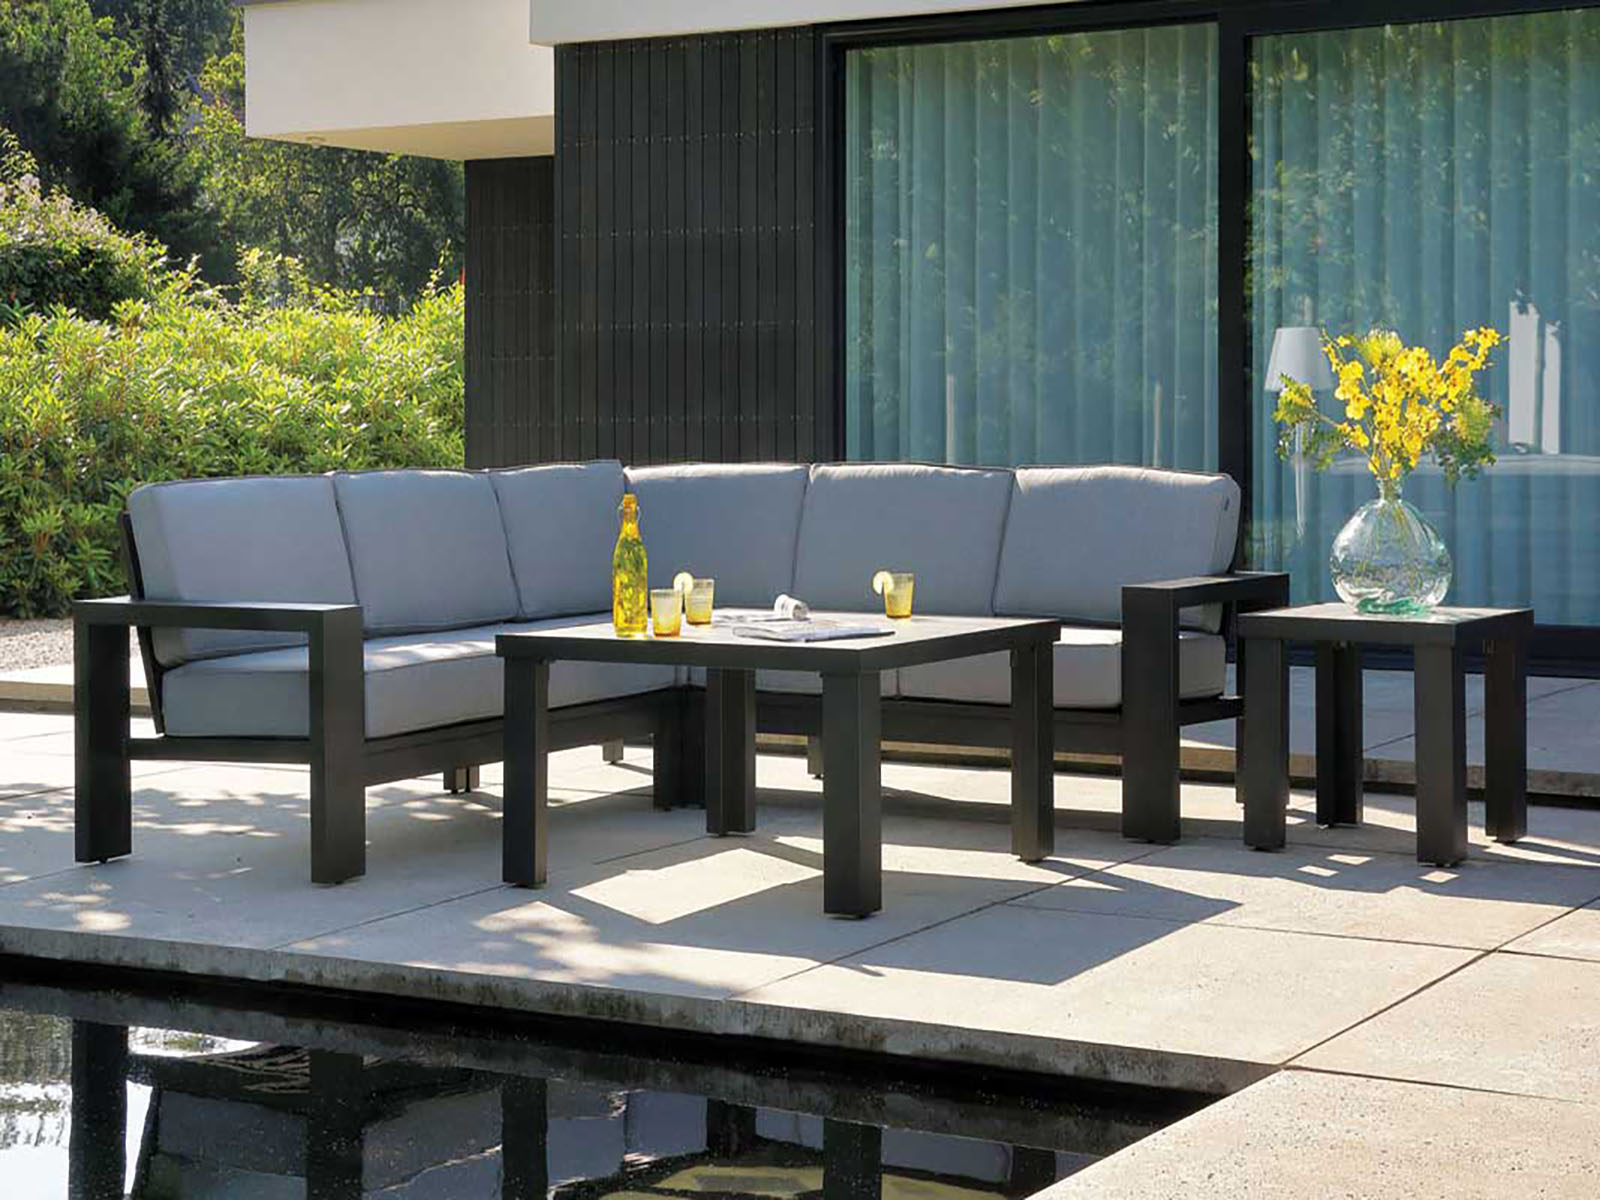 Outdoor Garden Furniture, De Tropen in Torre del Mar, Velez Malaga. Specialists in Garden Furniture and outdoor dining